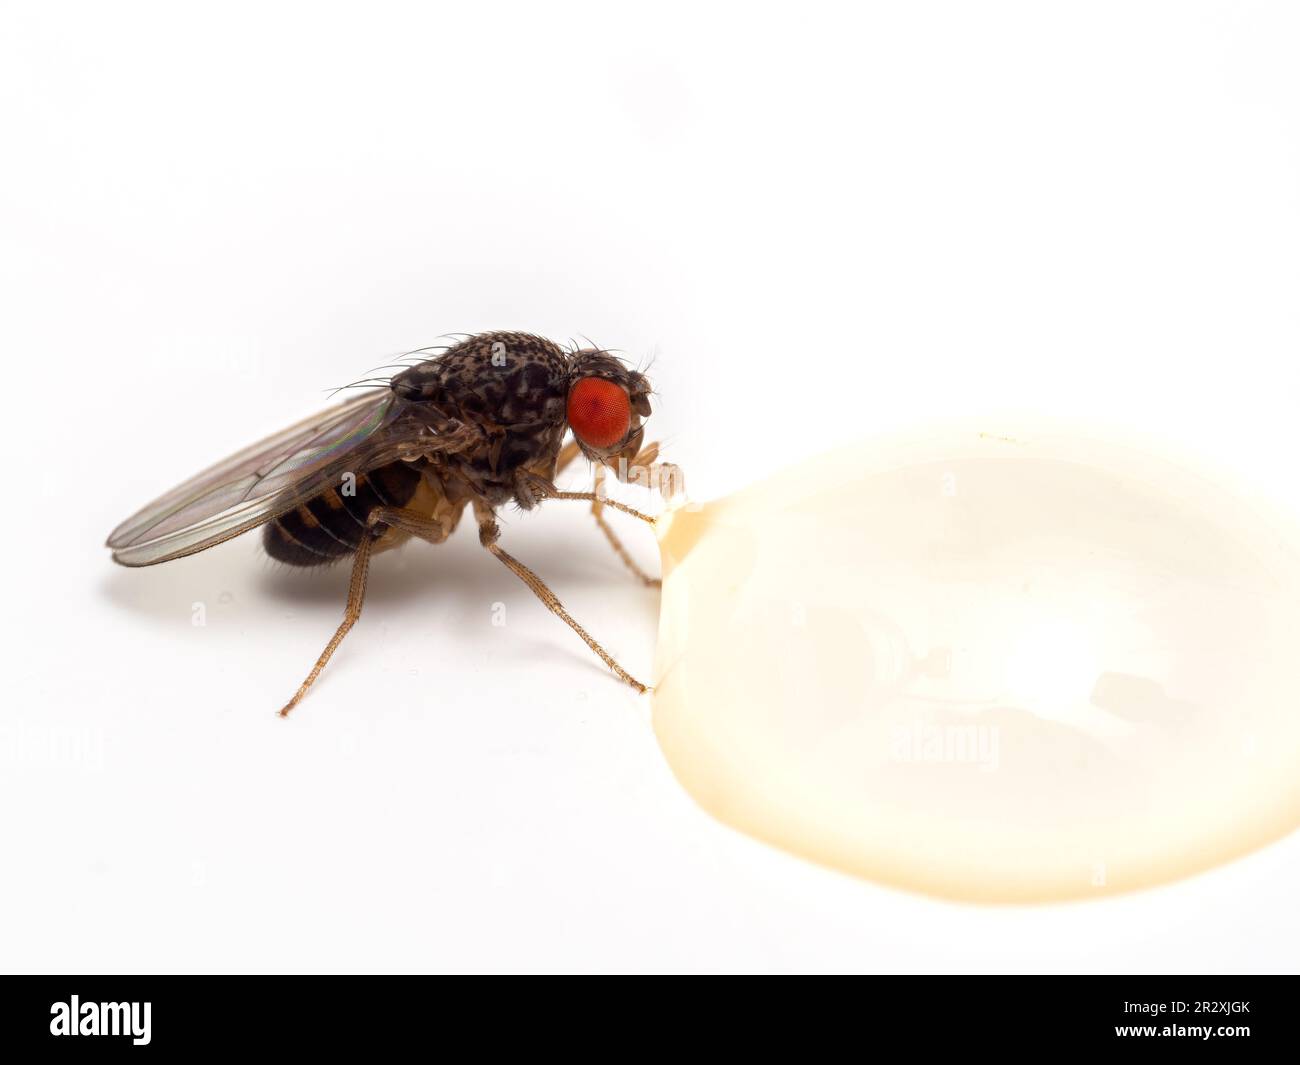 Vue latérale d'une mouche à fruits (Drosophila hydei) avec des yeux rouge vif, buvant d'une goutte de miel, isolée sur blanc Banque D'Images